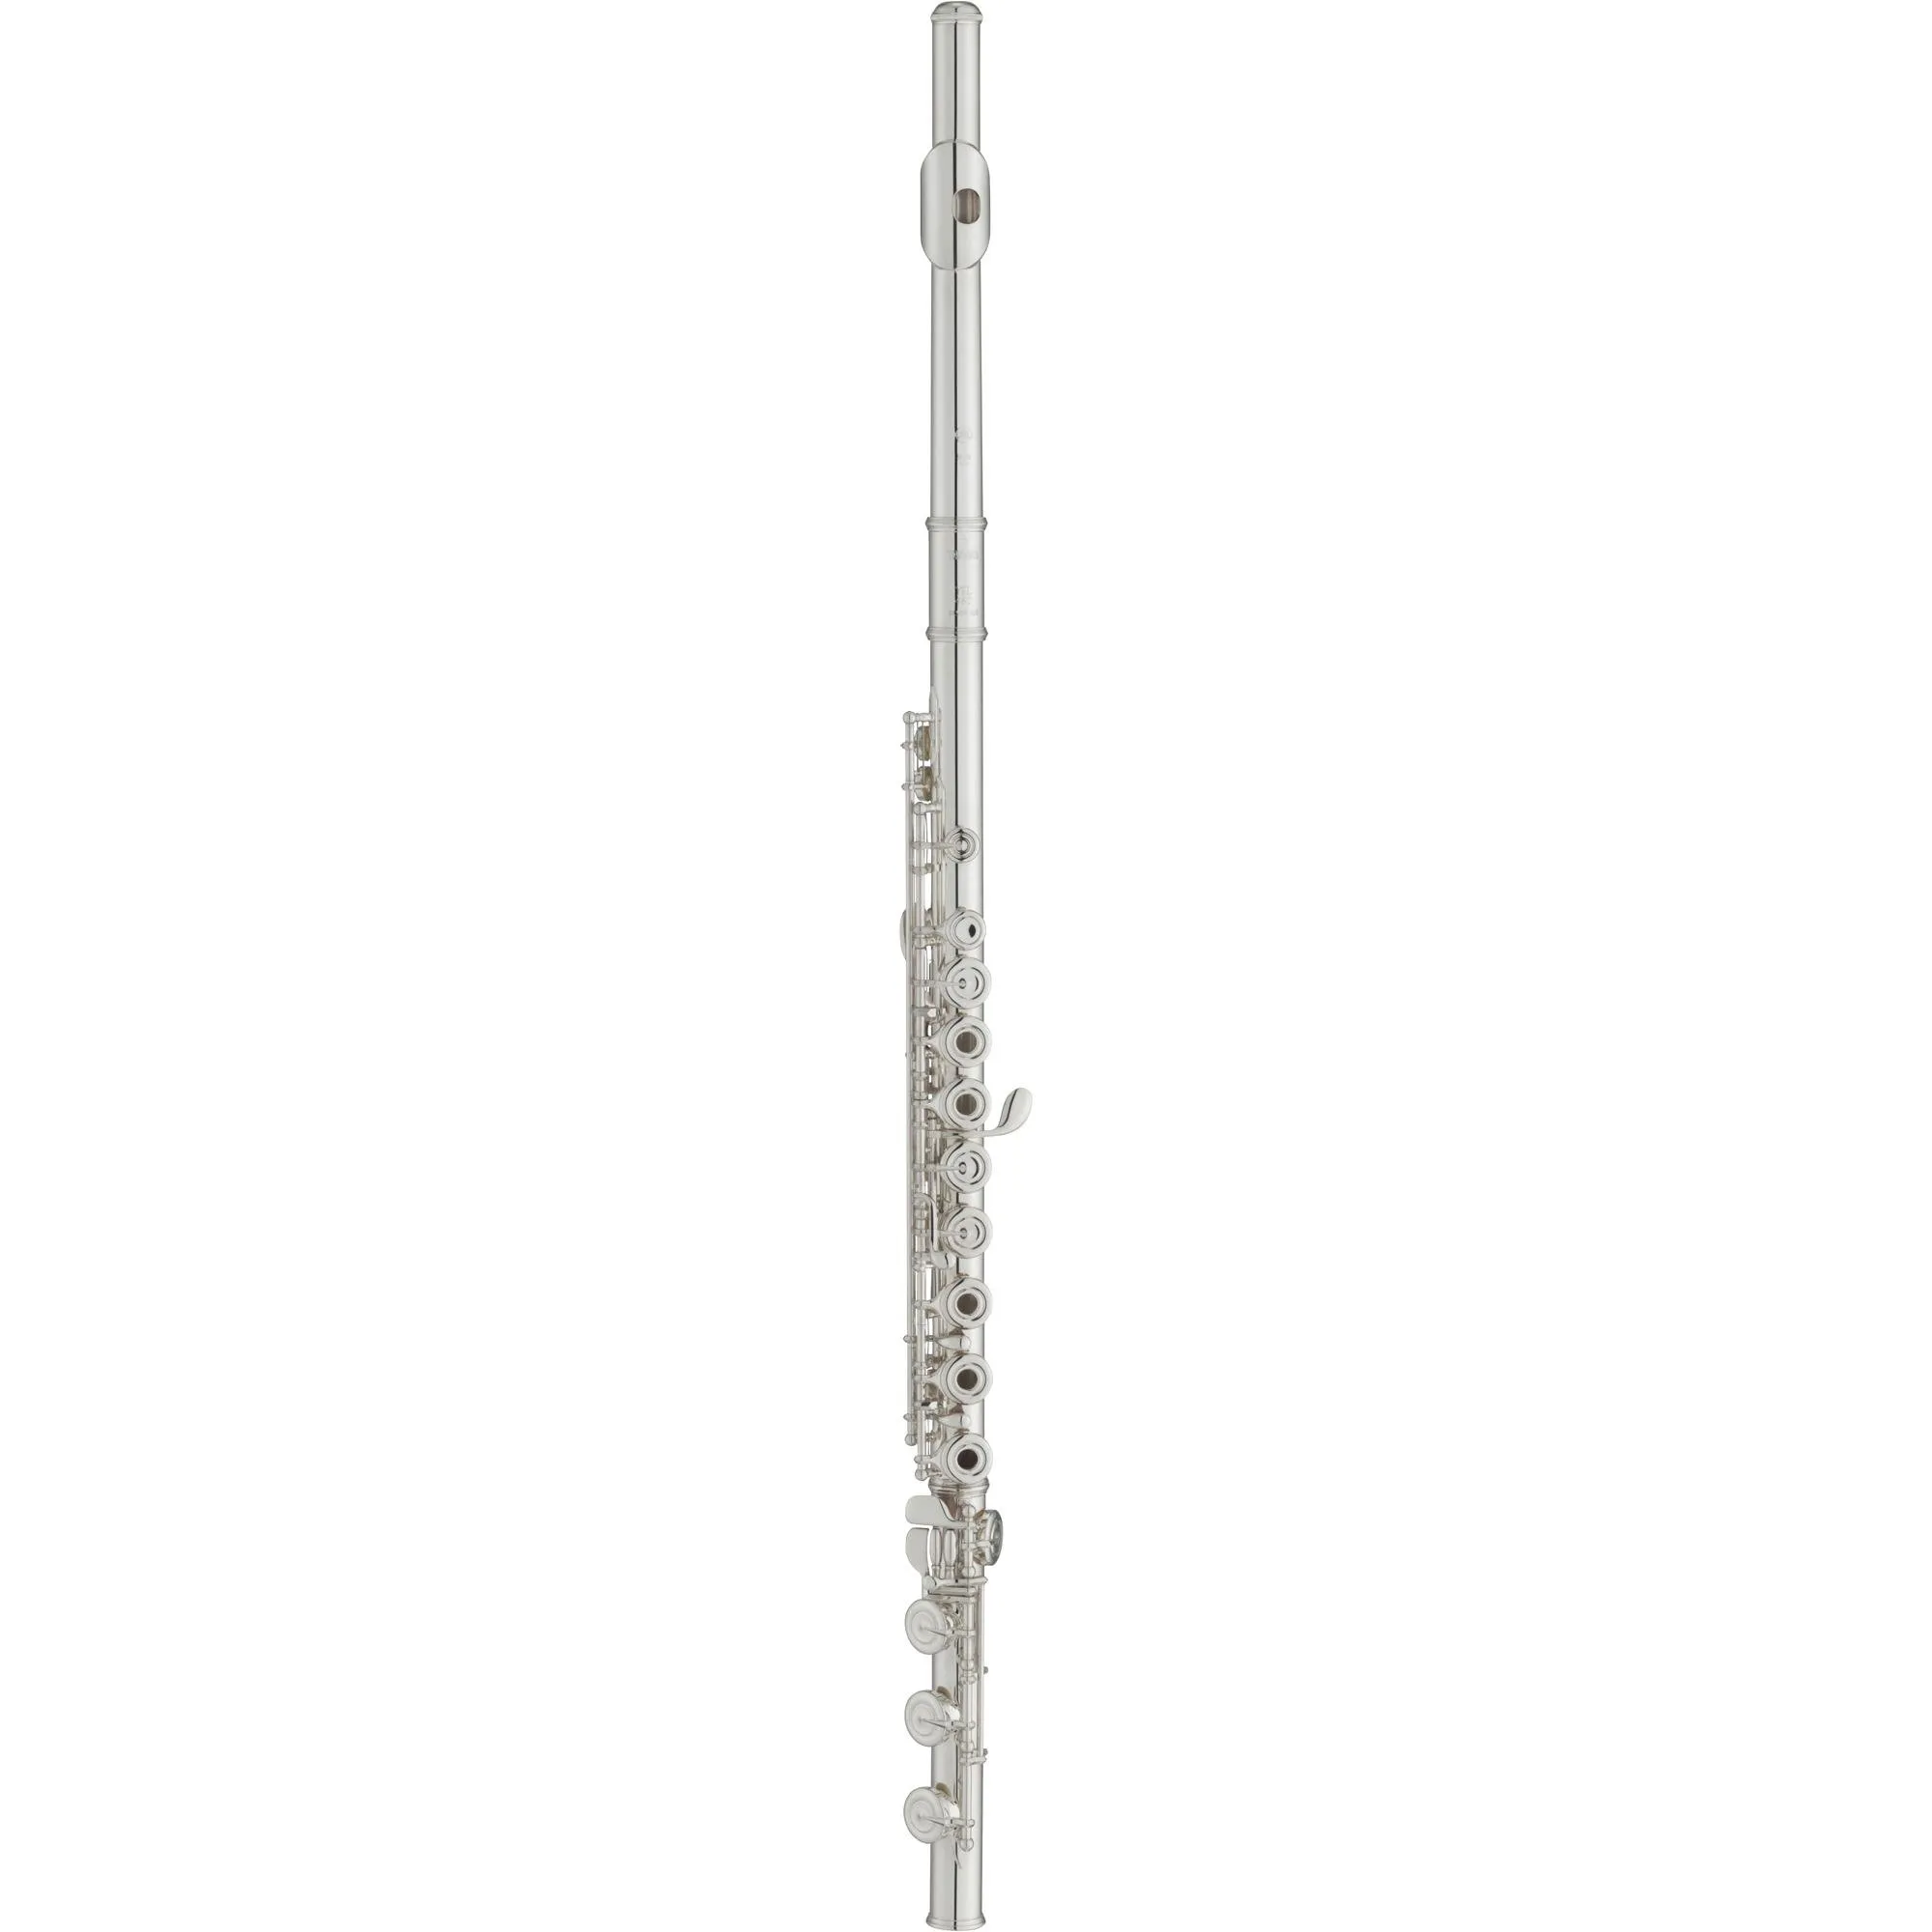 Flauta Transversal Yamaha YFL-482H Prata por 12.879,99 à vista no boleto/pix ou parcele em até 12x sem juros. Compre na loja Mundomax!